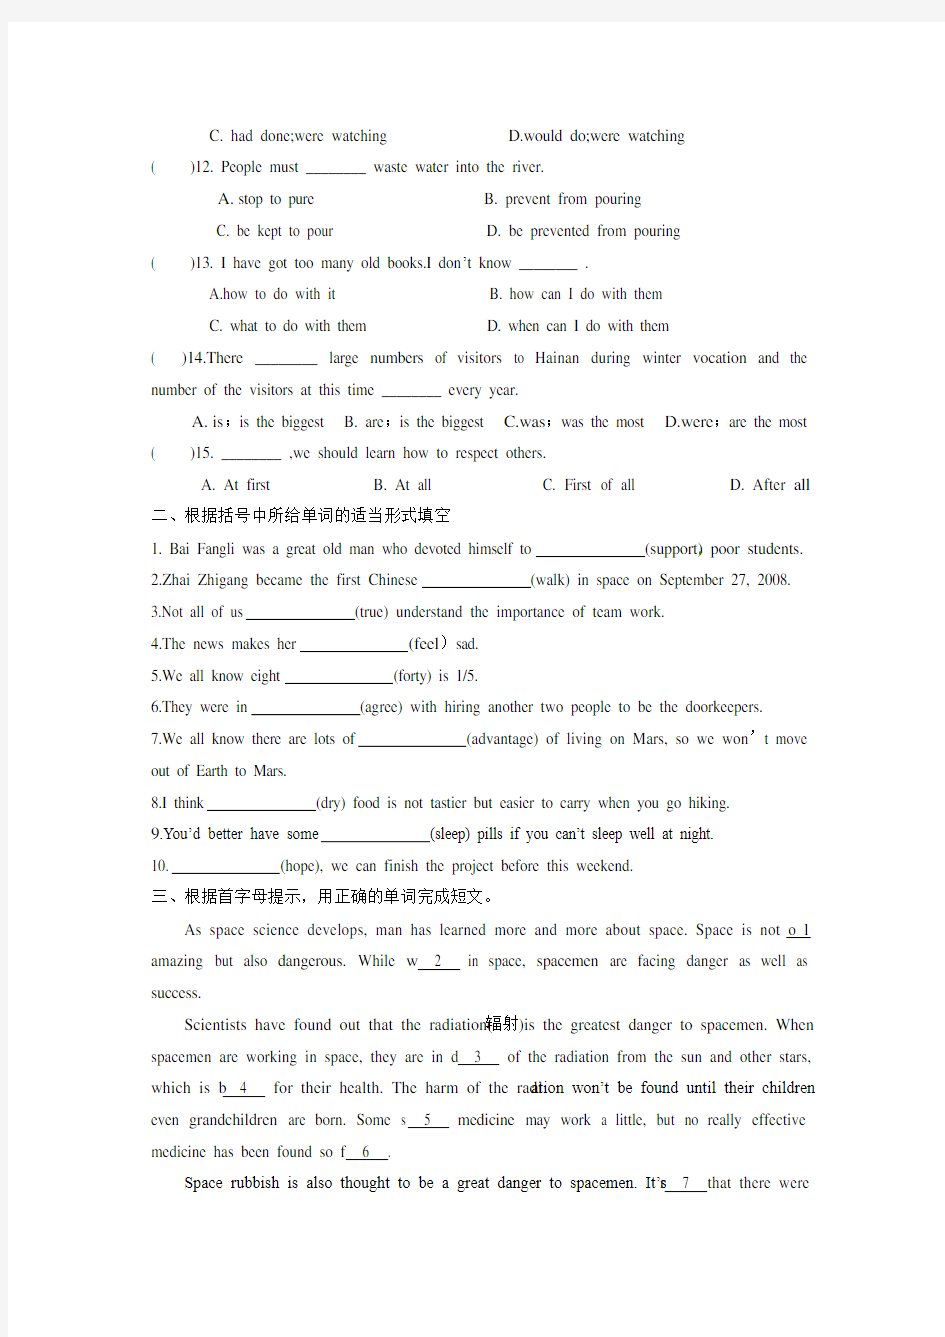 译林版初中英语中考复习专项练习题10套及参考答案 